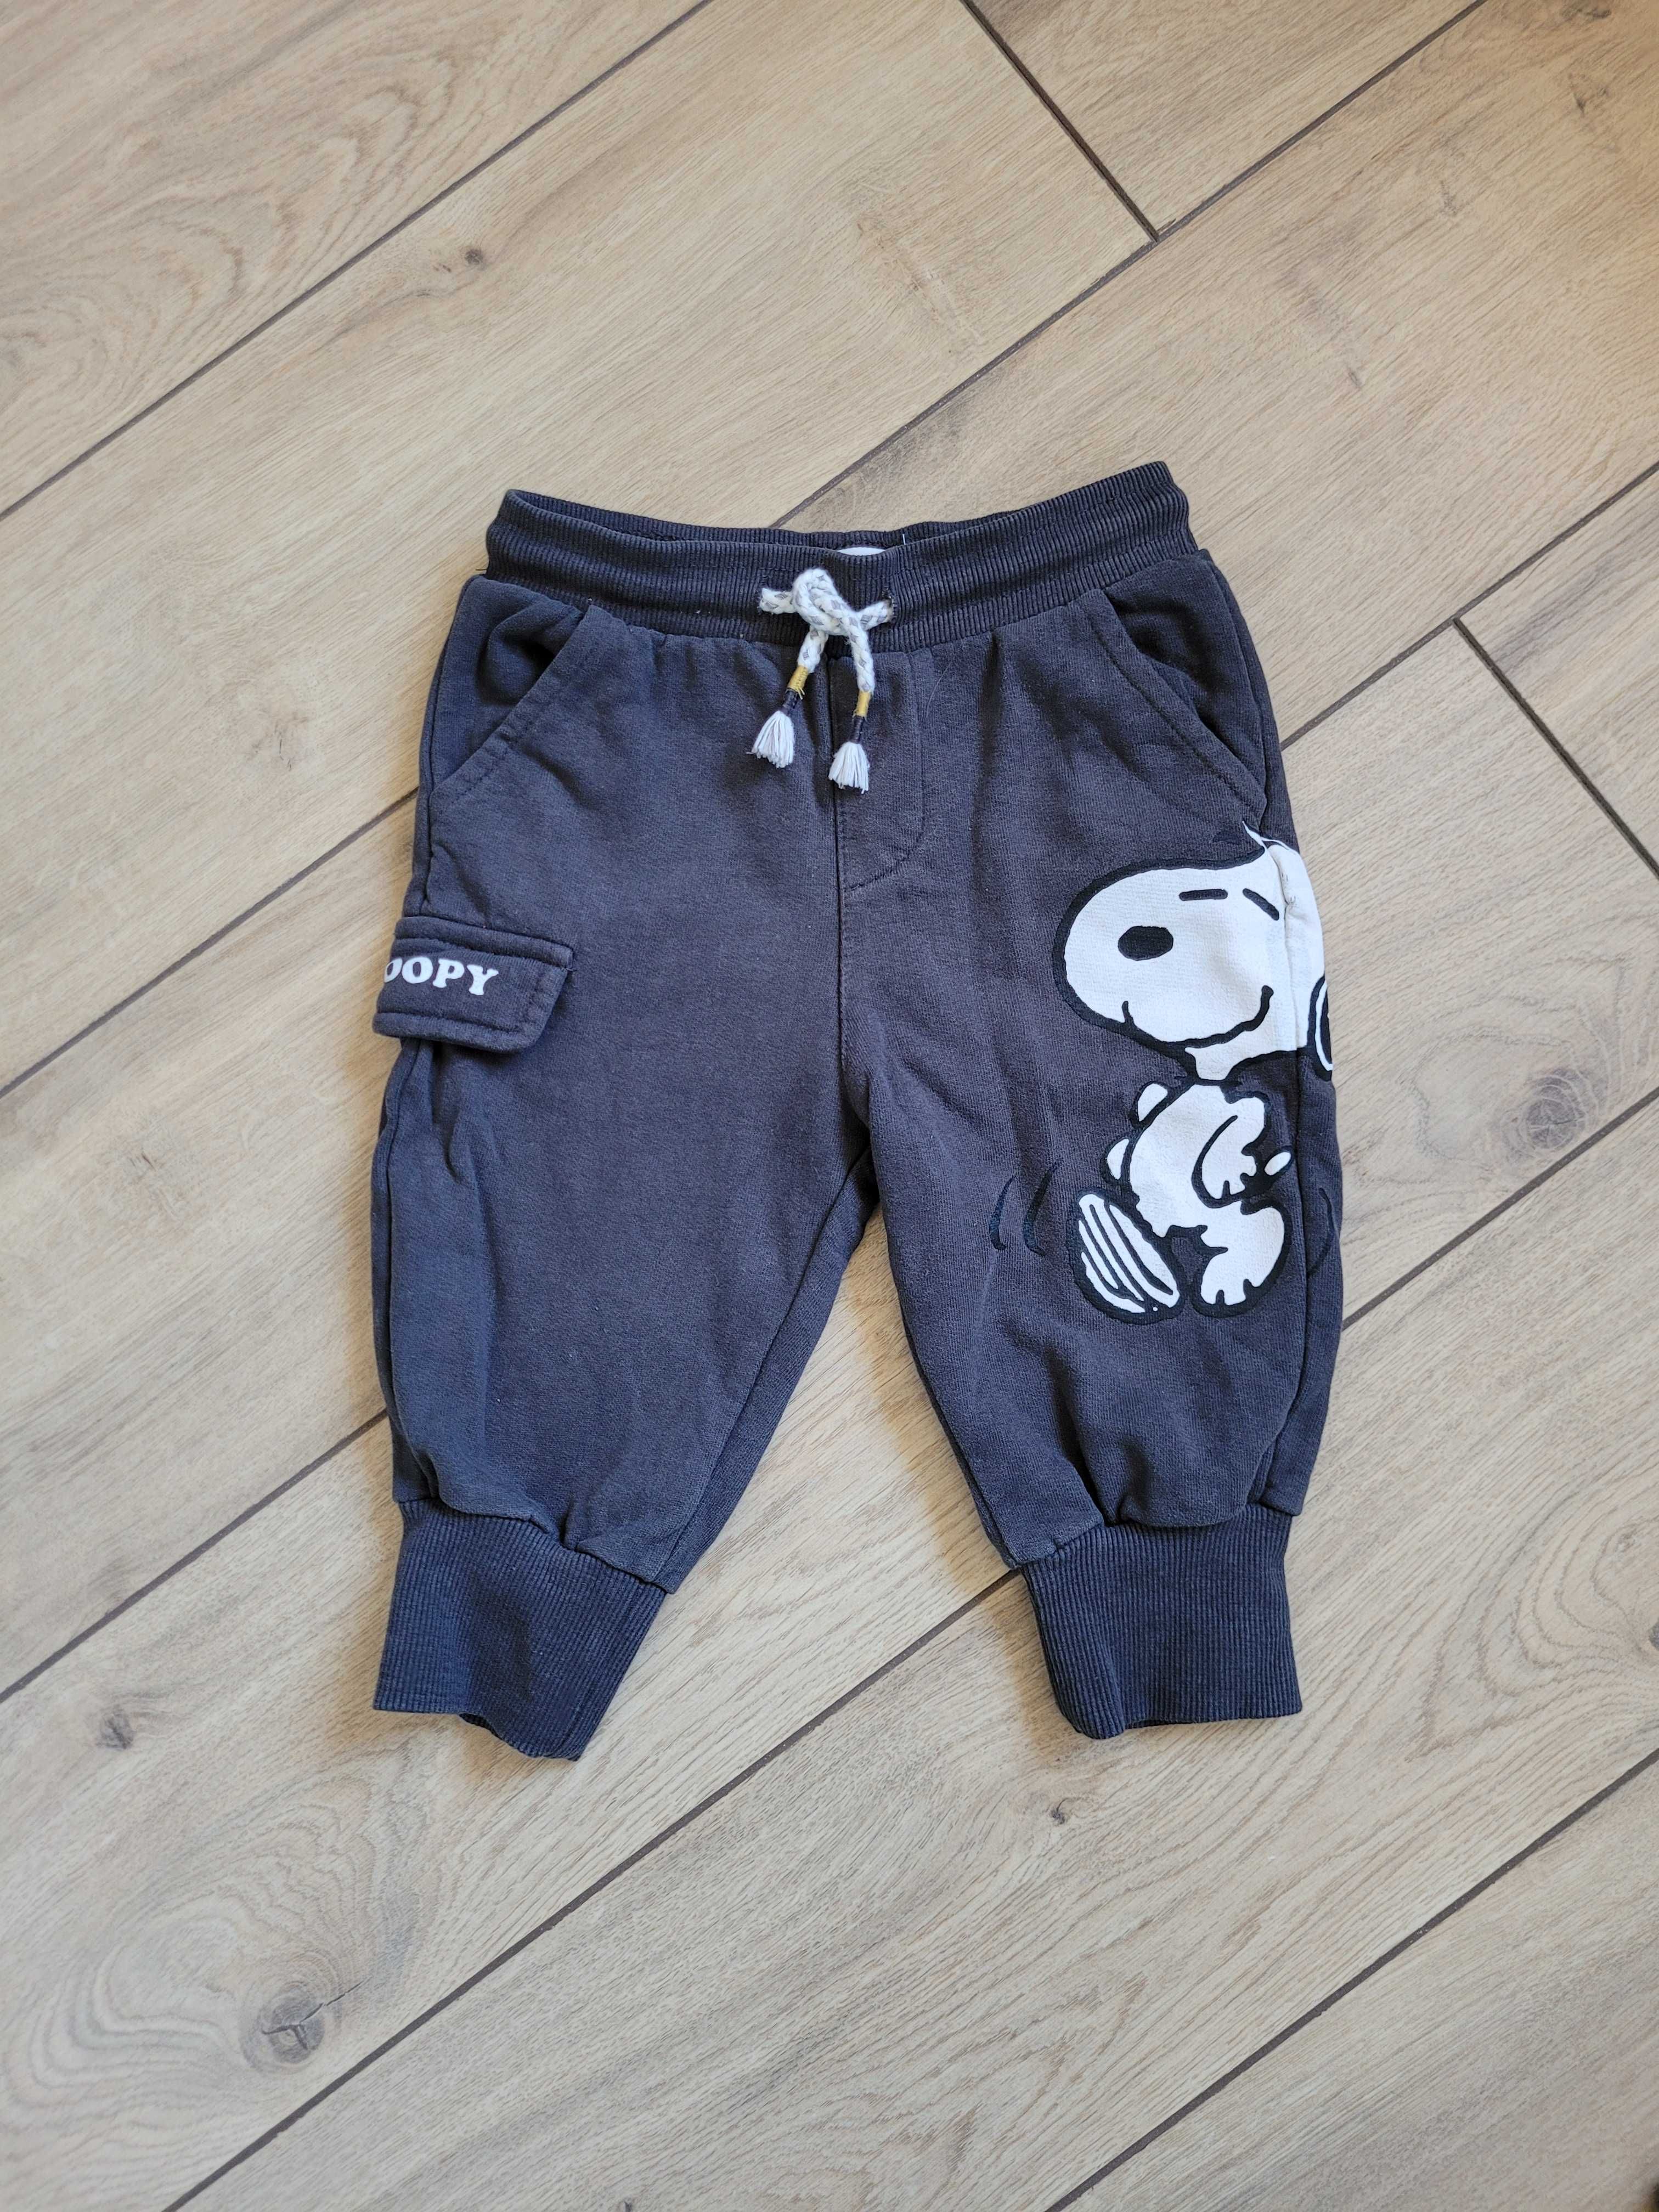 Spodnie Reserved Snoopy 80 9-12 dresy miękkie joggery unisex długie